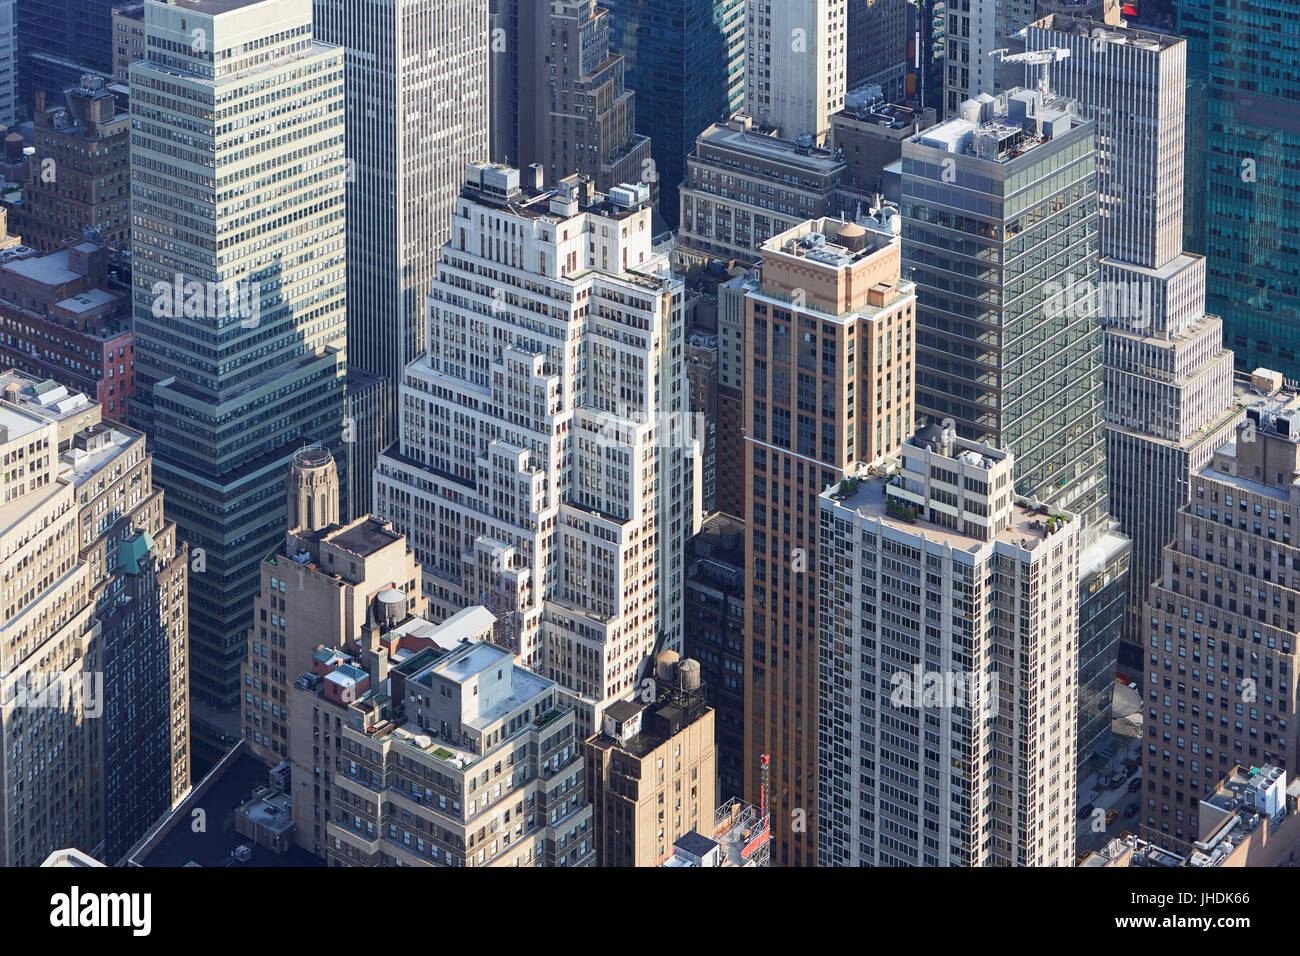 New York City skyline vue aérienne avec les gratte-ciel modernes et des rues Banque D'Images